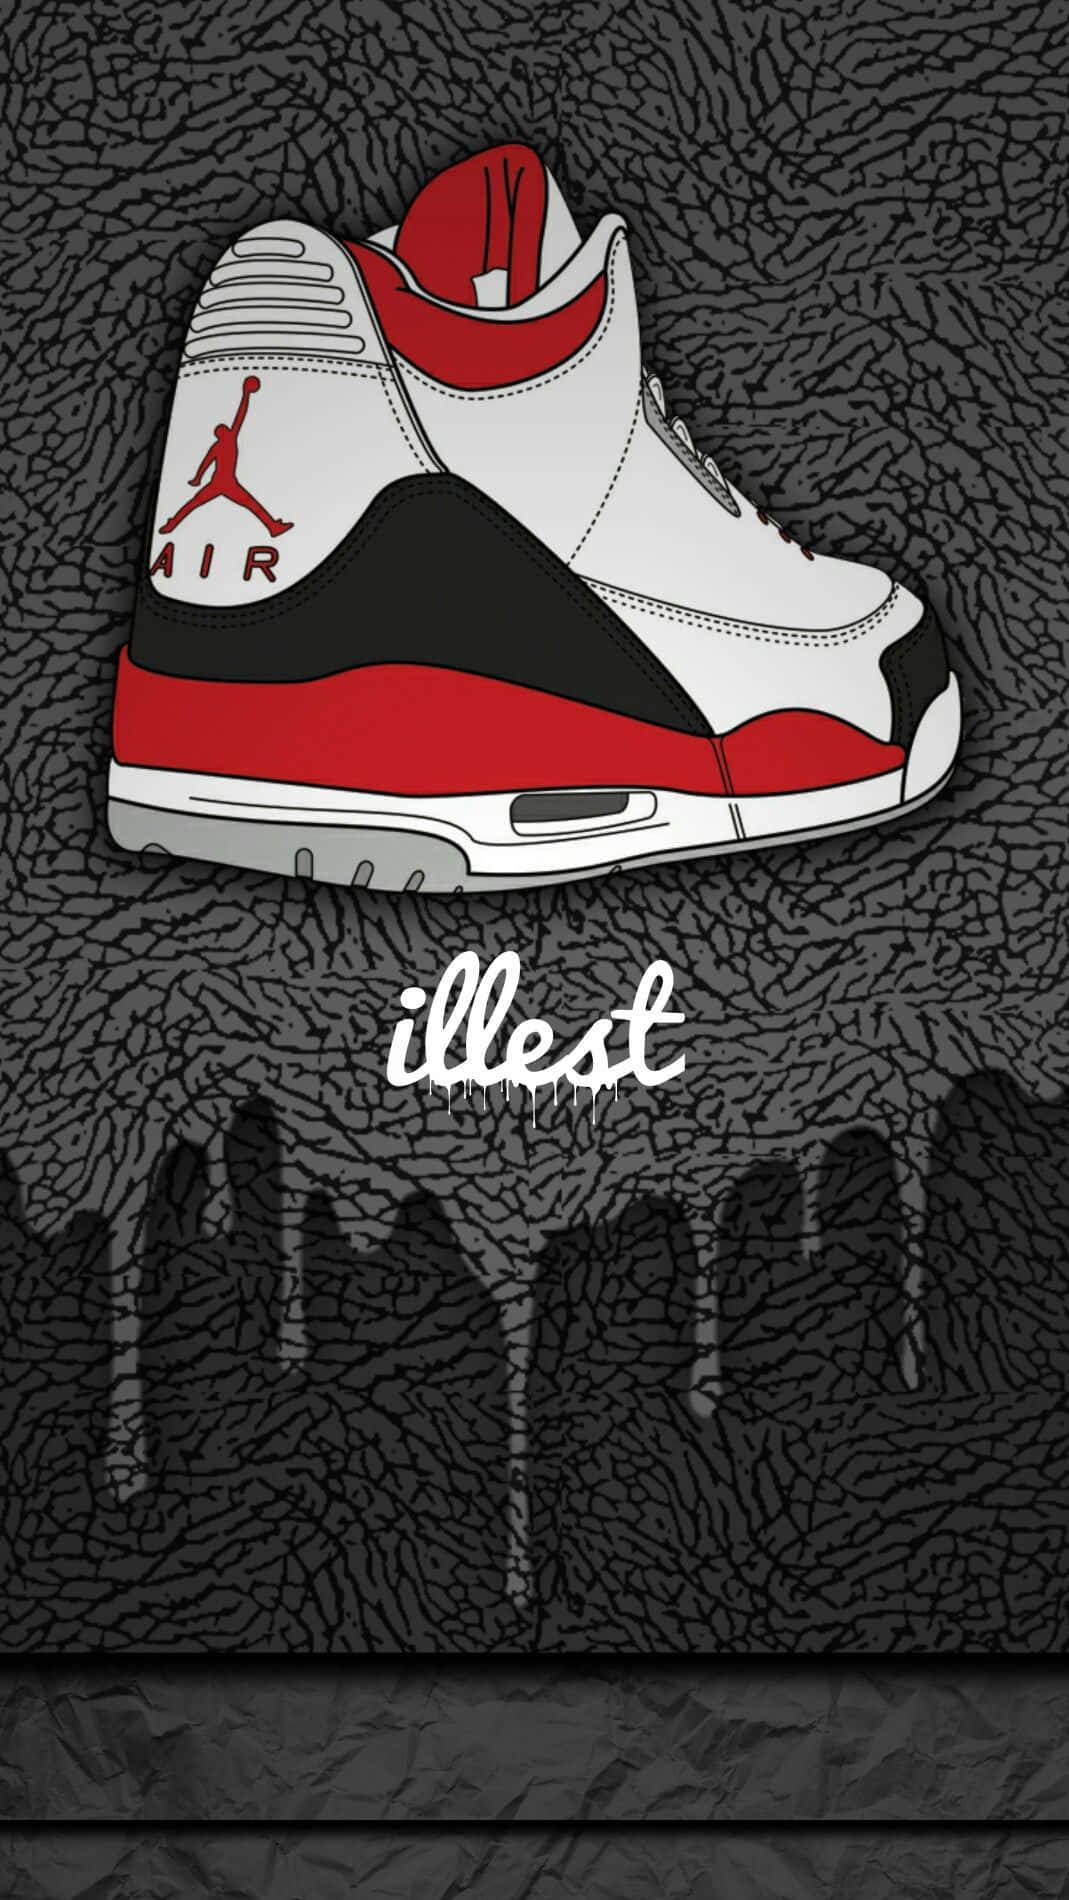 A Jordan 3 Sneaker Is Shown On A Black Background Wallpaper